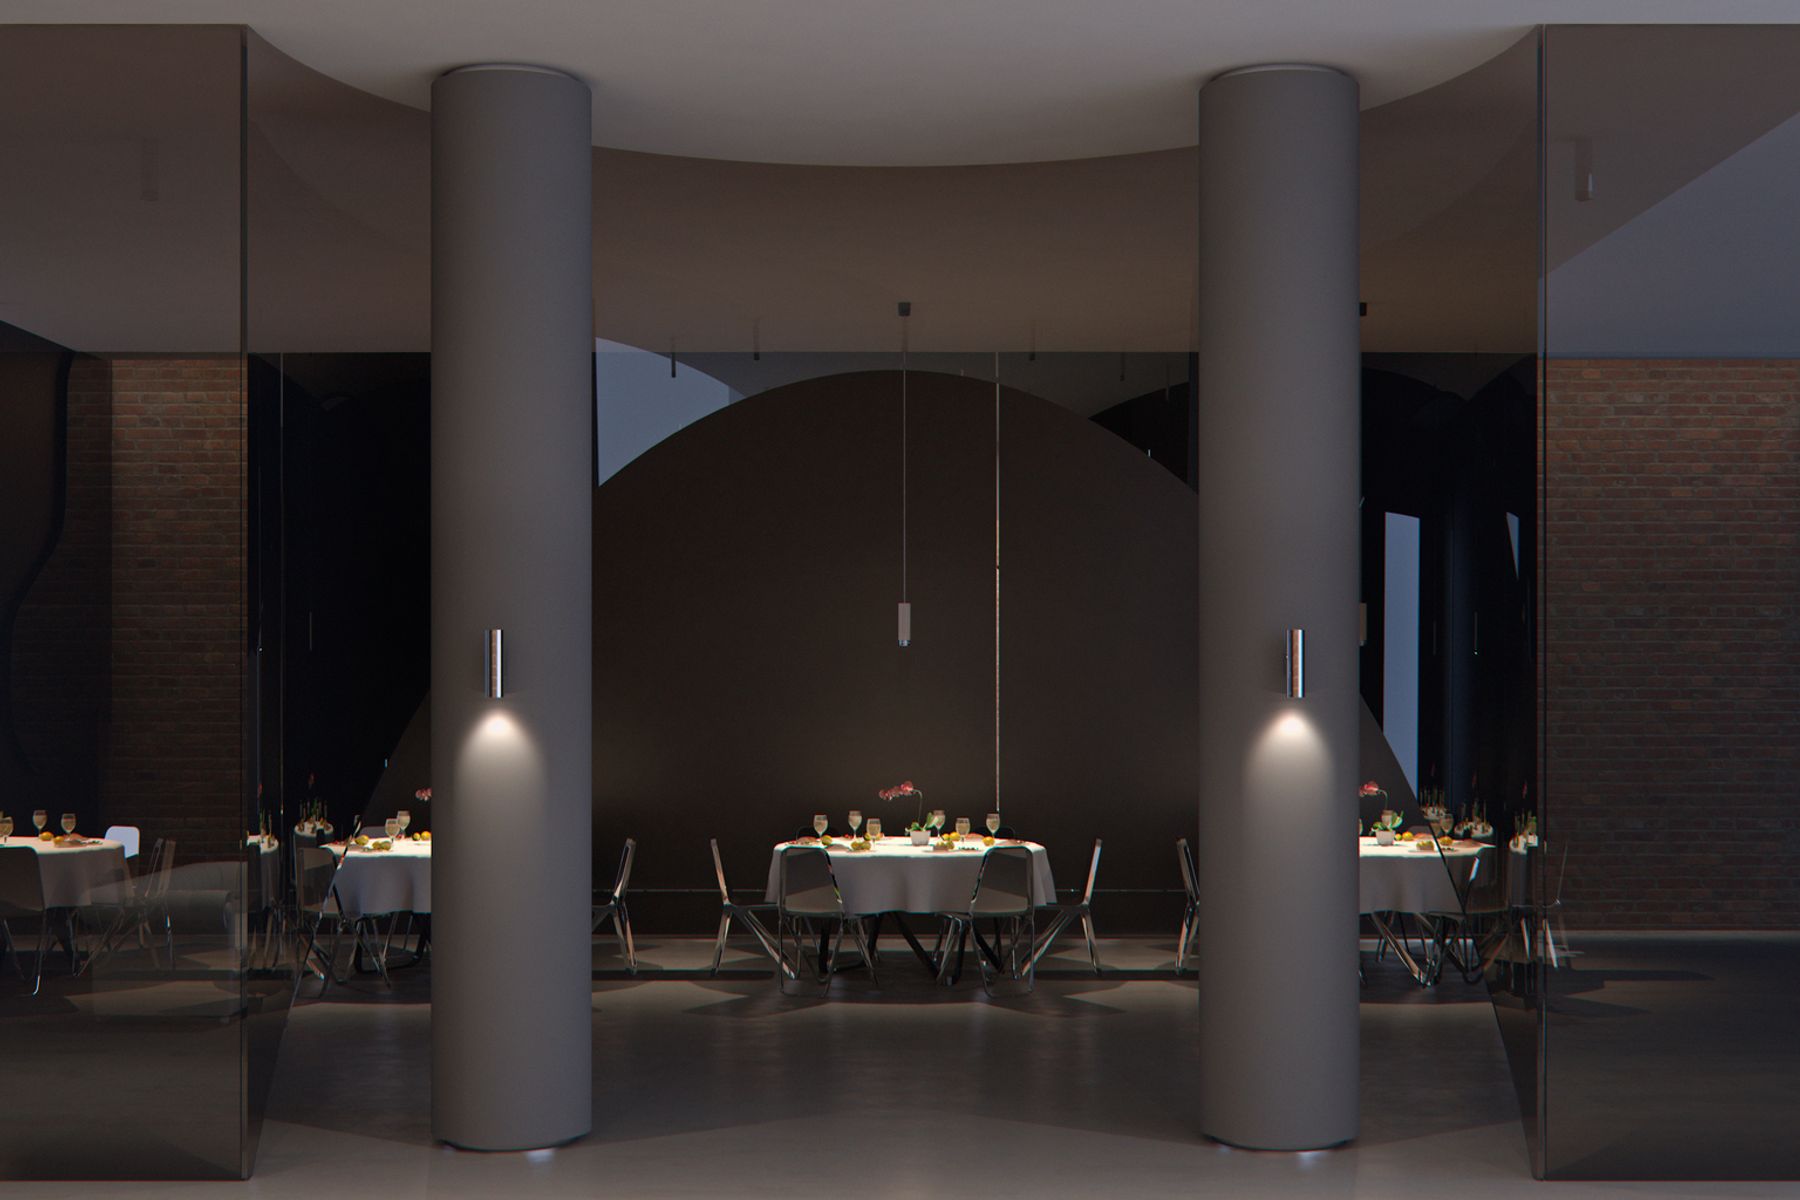 Gli apparecchi da parete Starpoint convincono con il loro pregiato design e la luce d’atmosfera, che crea un ritmo visivo ed accentua gli elementi architettonici verticali.